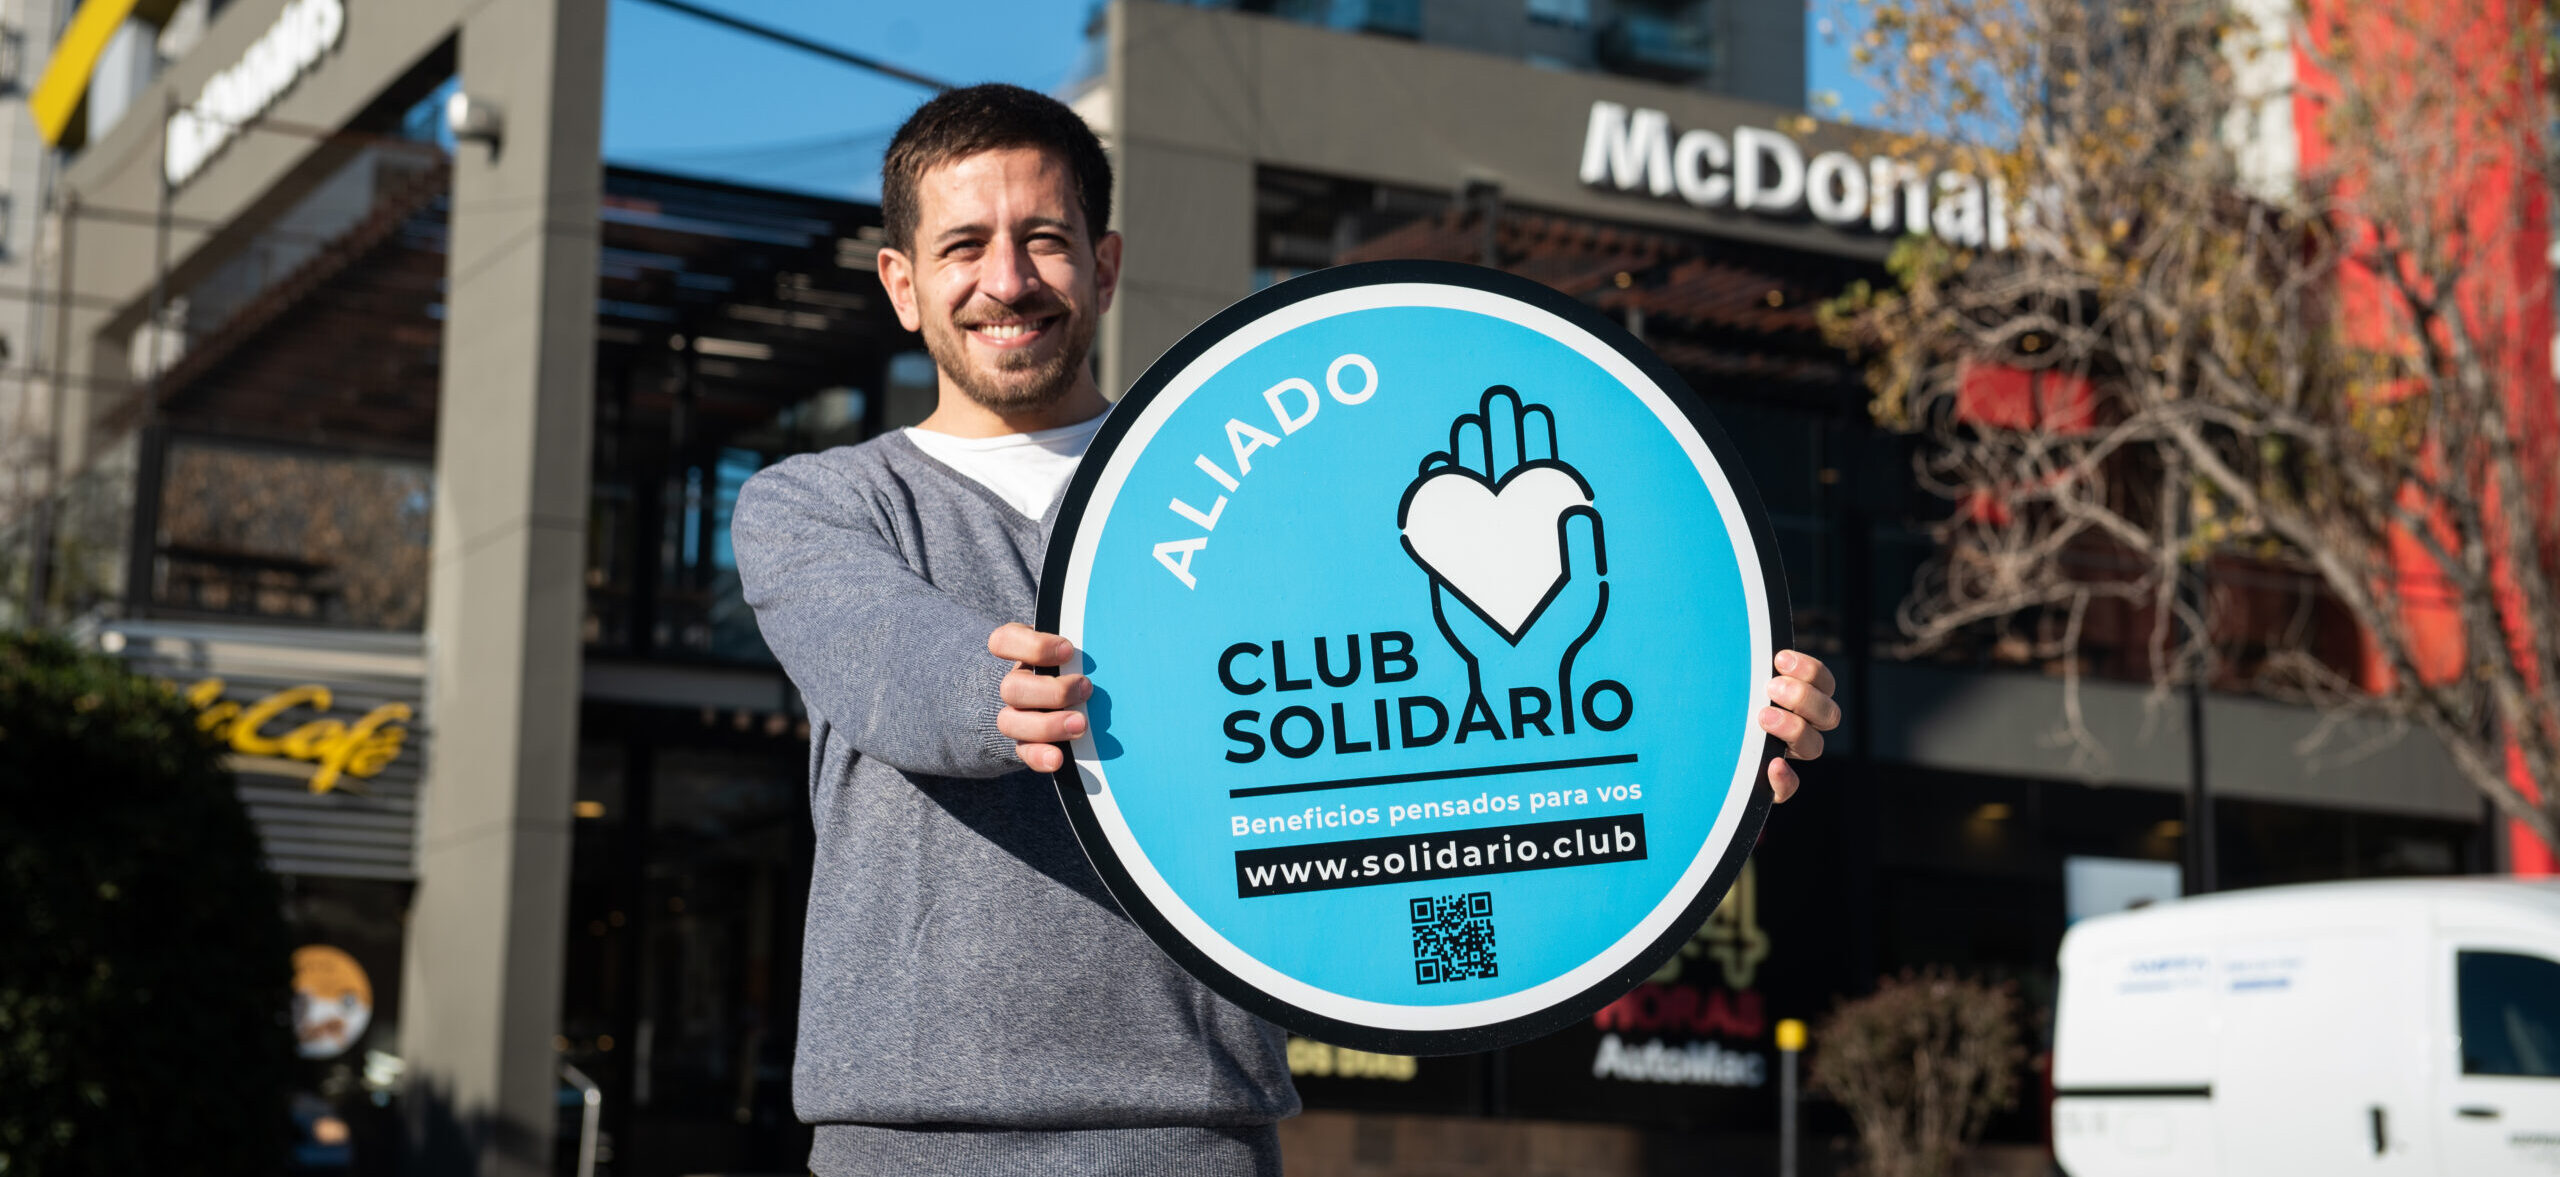 [Argentina] McDonald’s se une a Club Solidario para brindar beneficios a quienes ayuden a causas sociales